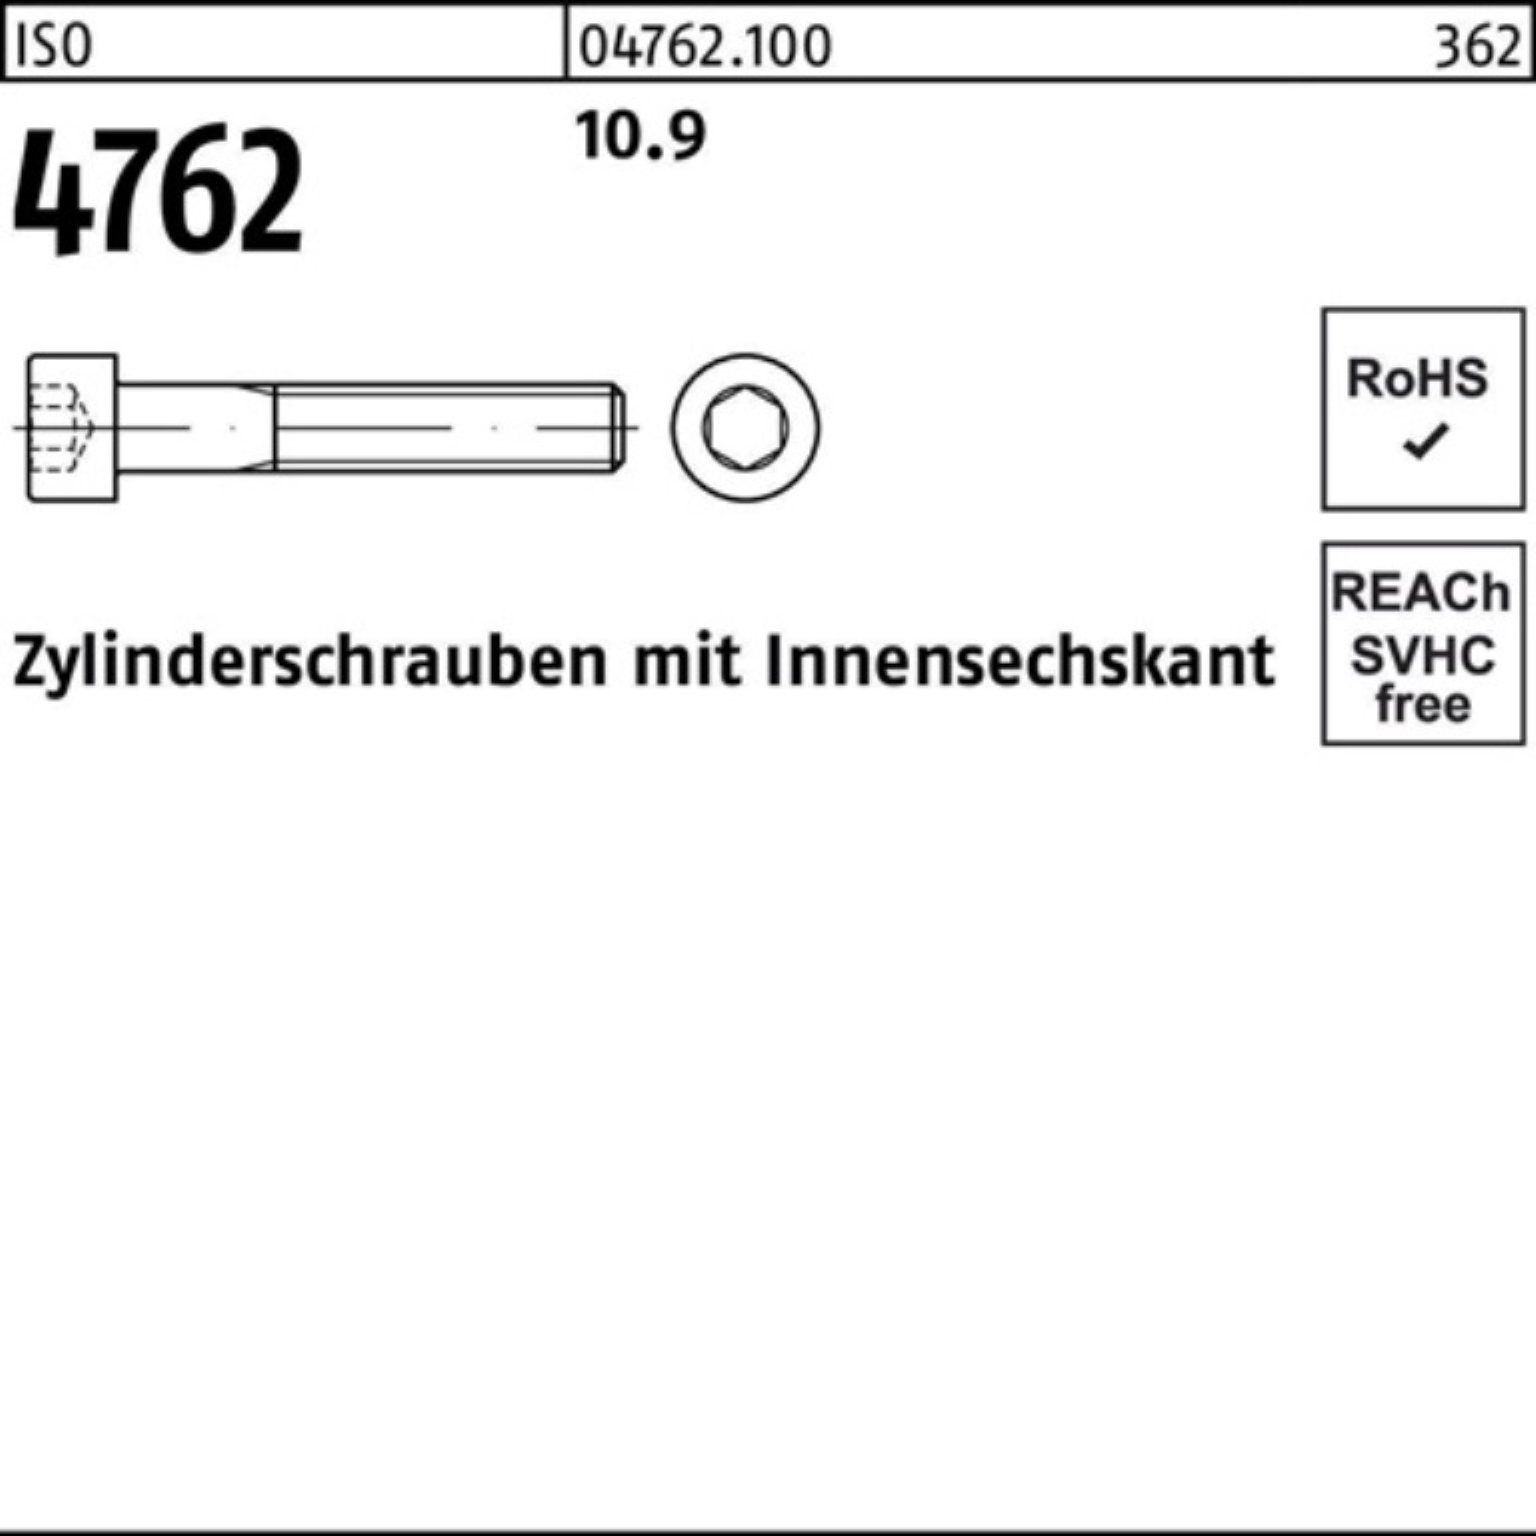 Pack 10.9 80 Zylinderschraube 10 Reyher Innen-6kt M30x Zylinderschraube 4762 ISO Stück 100er